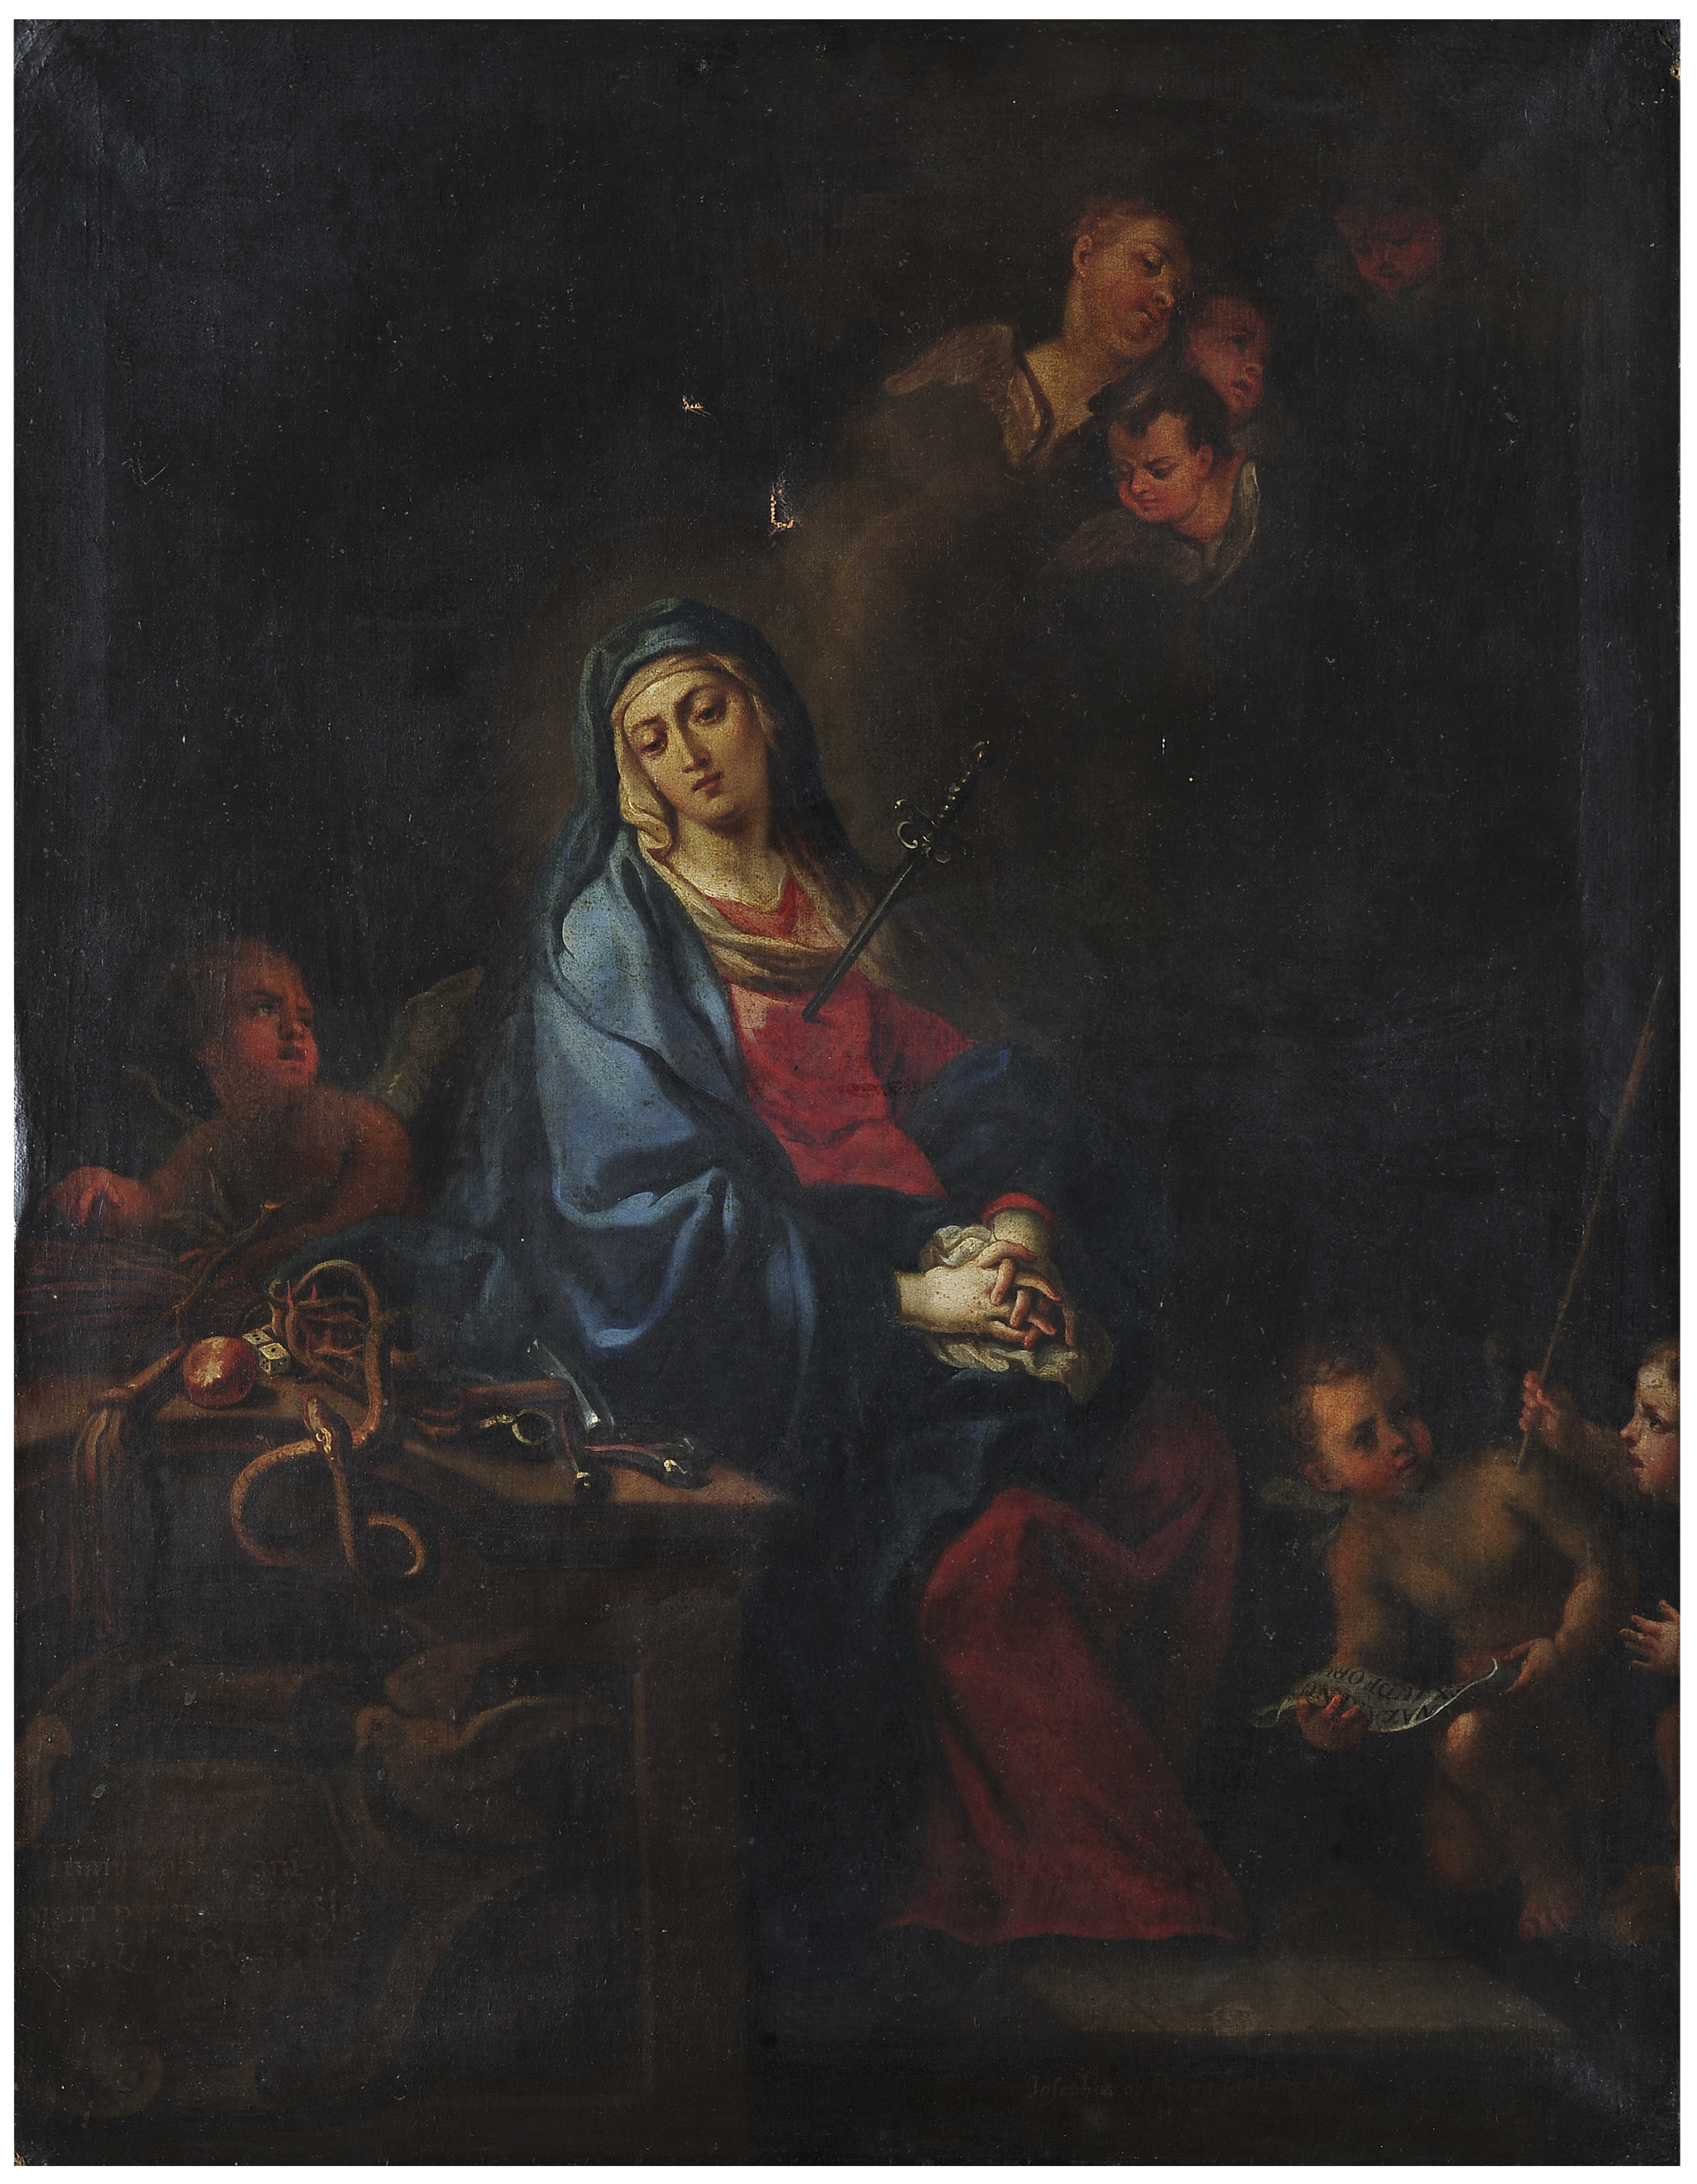 Virgen de la Soledad | Creación y restauración: lo singular y complejo del arte | Museo Amparo, Puebla